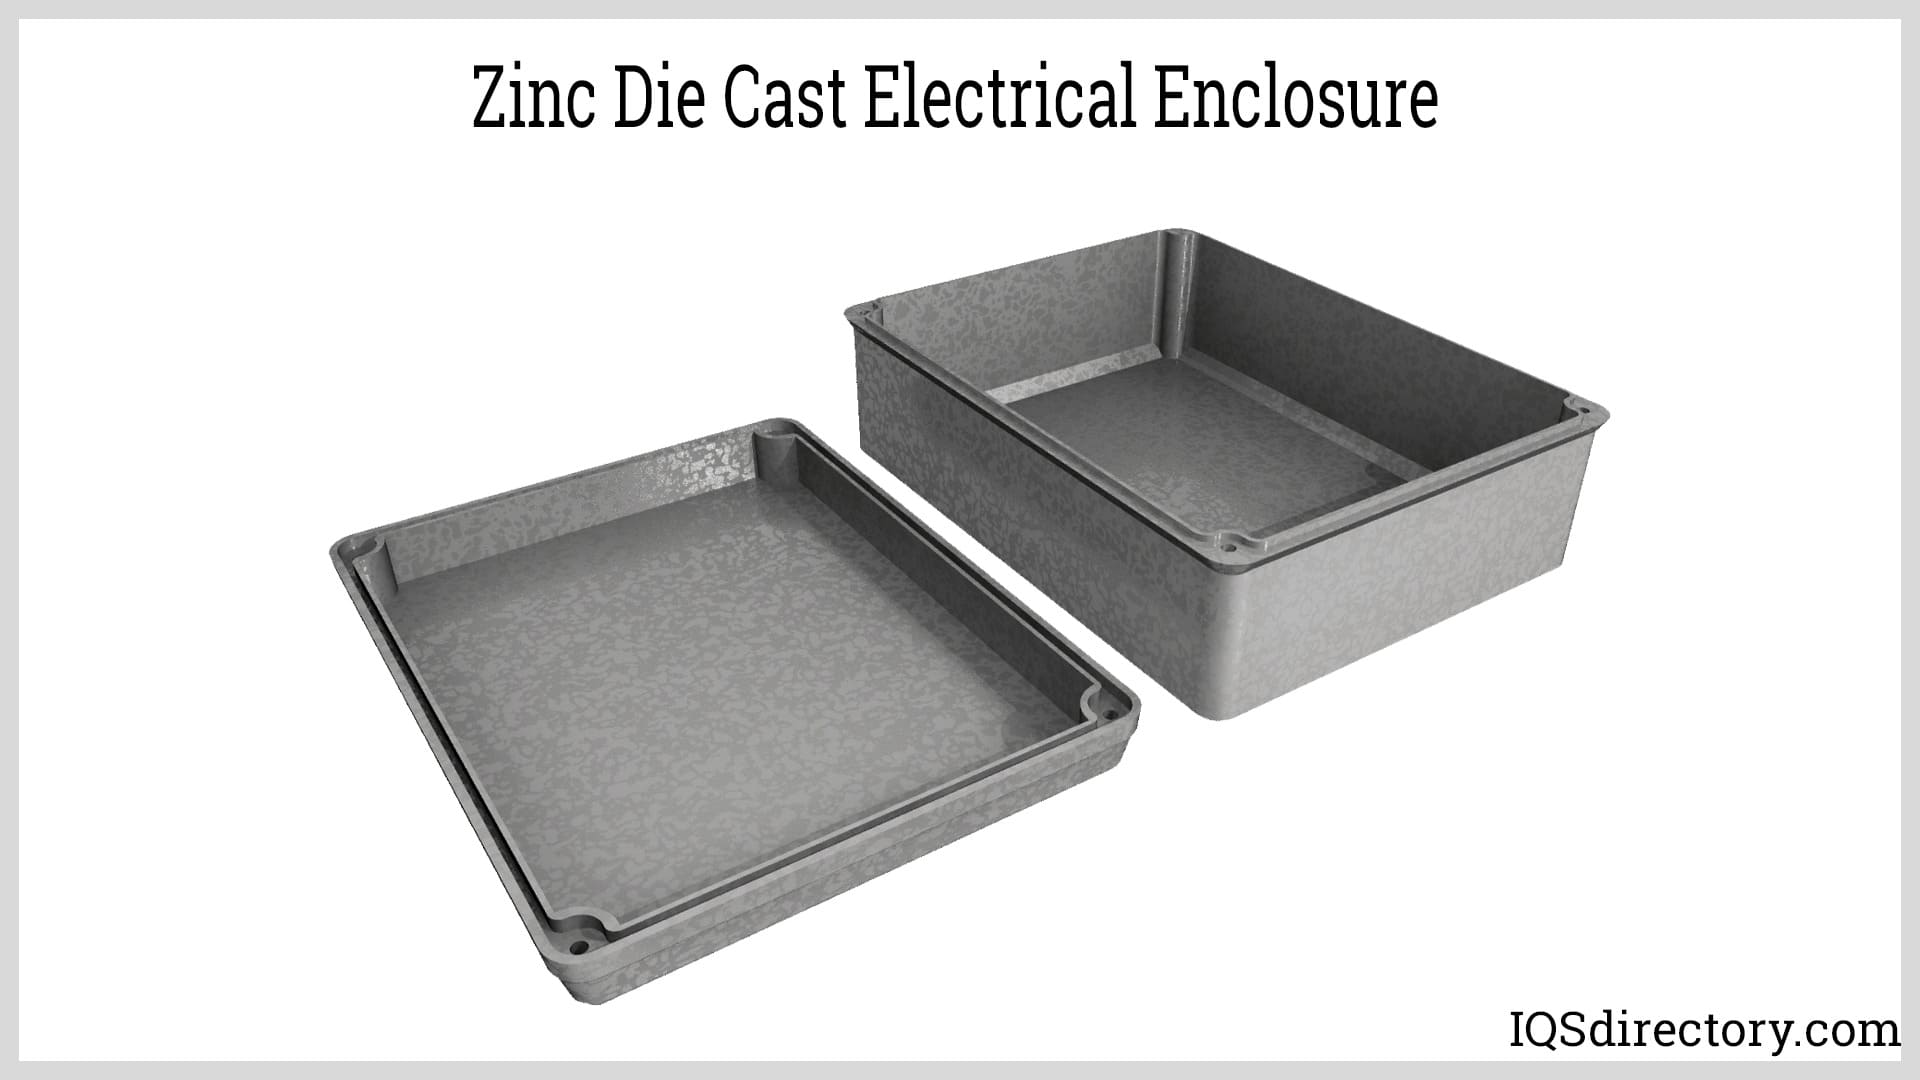 Zinc Die Cast Electrical Enclosure